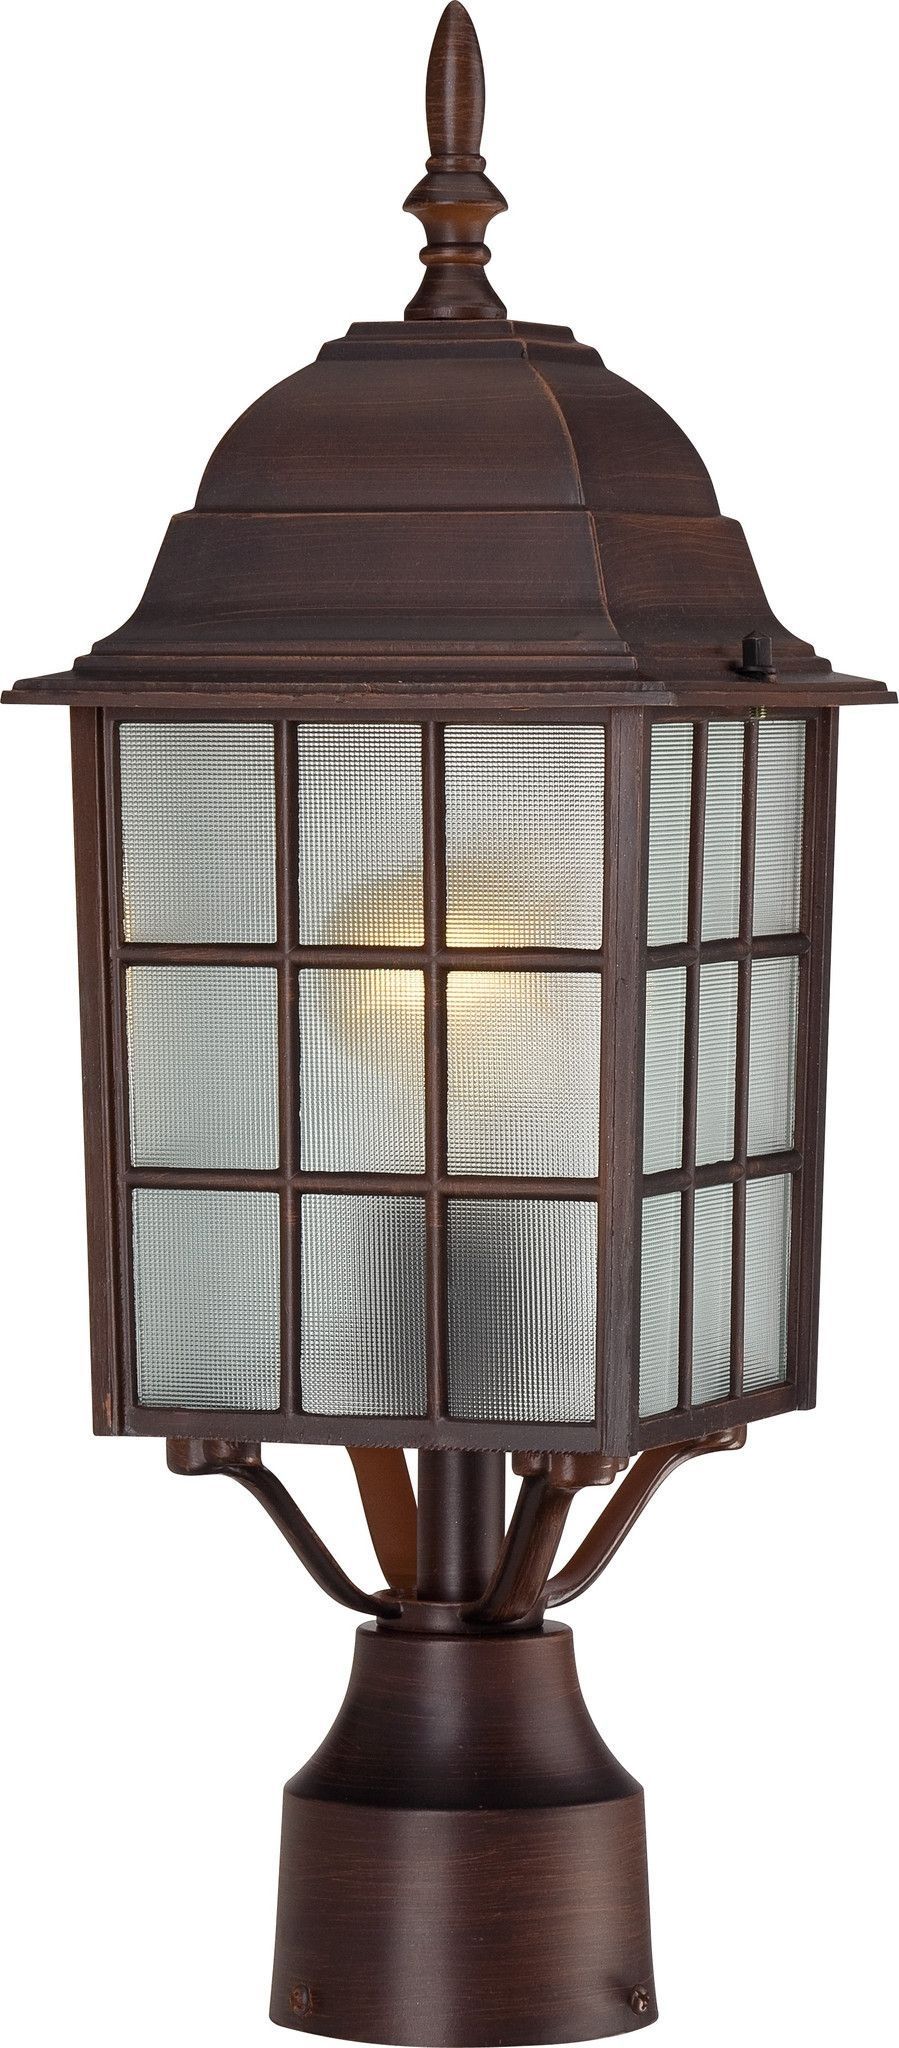 17" Outdoor Lamp Post Lights In Rustic Bronze Finish | Outdoor Lamp In Outdoor Lamp Lanterns (View 18 of 20)